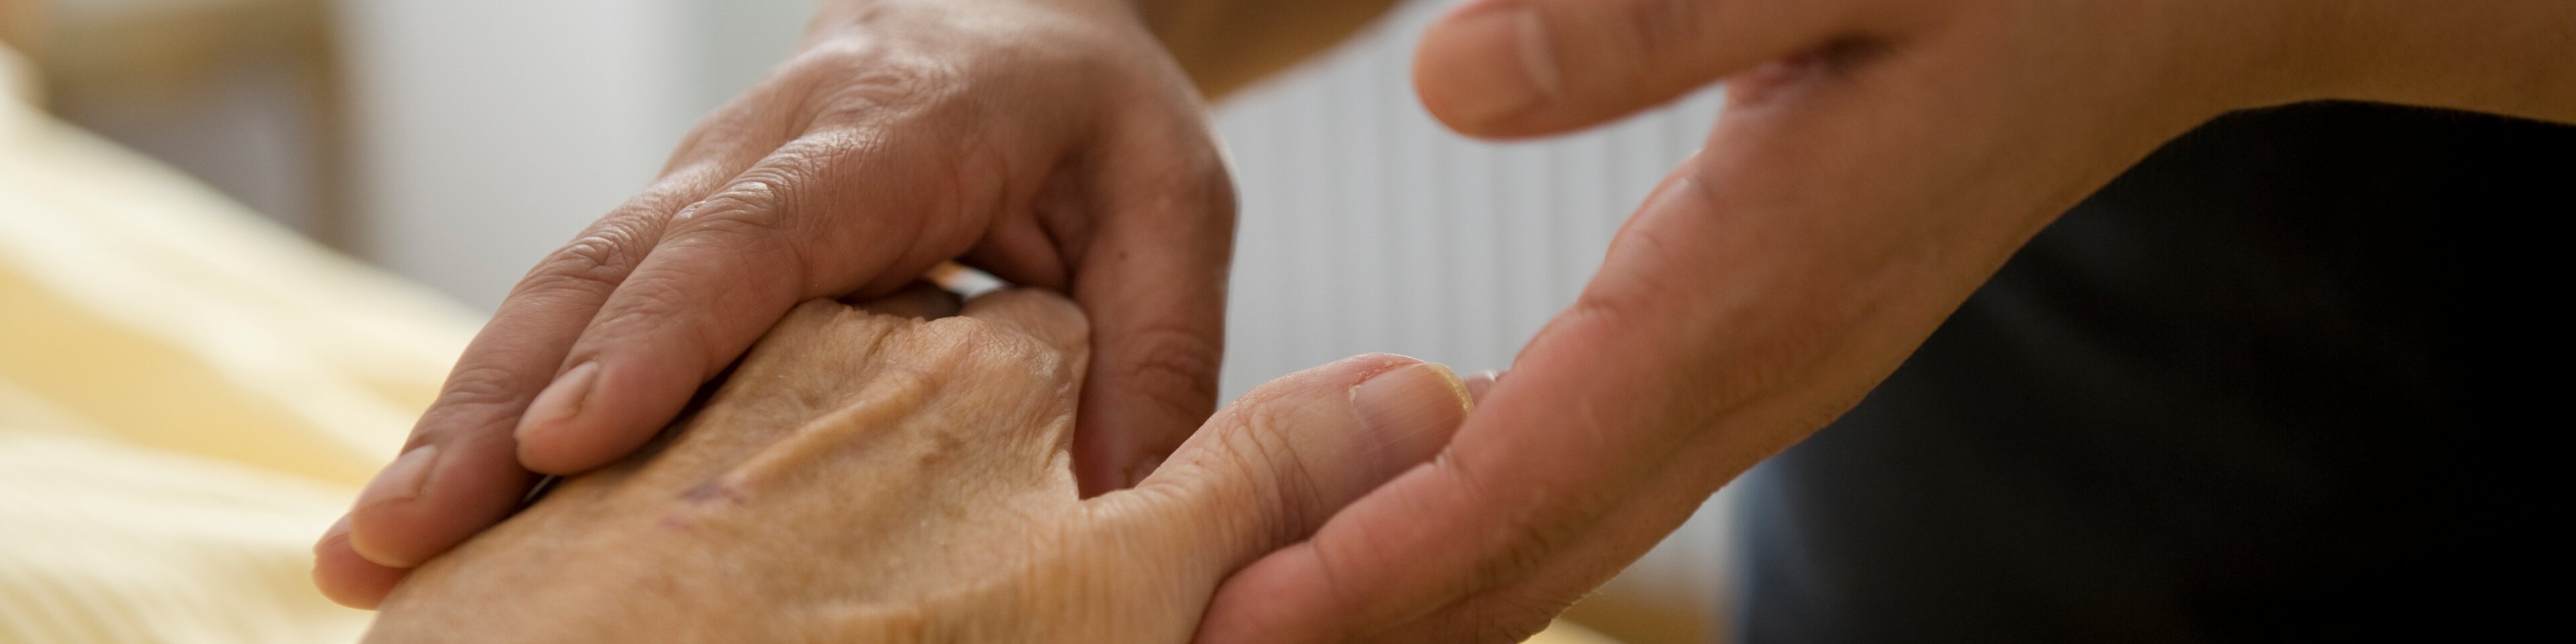 Hände eines Pflegers/Arztes und die eines Senioren halten einander | © © Photographien Thomas Klinger, www.atelierklinger.de